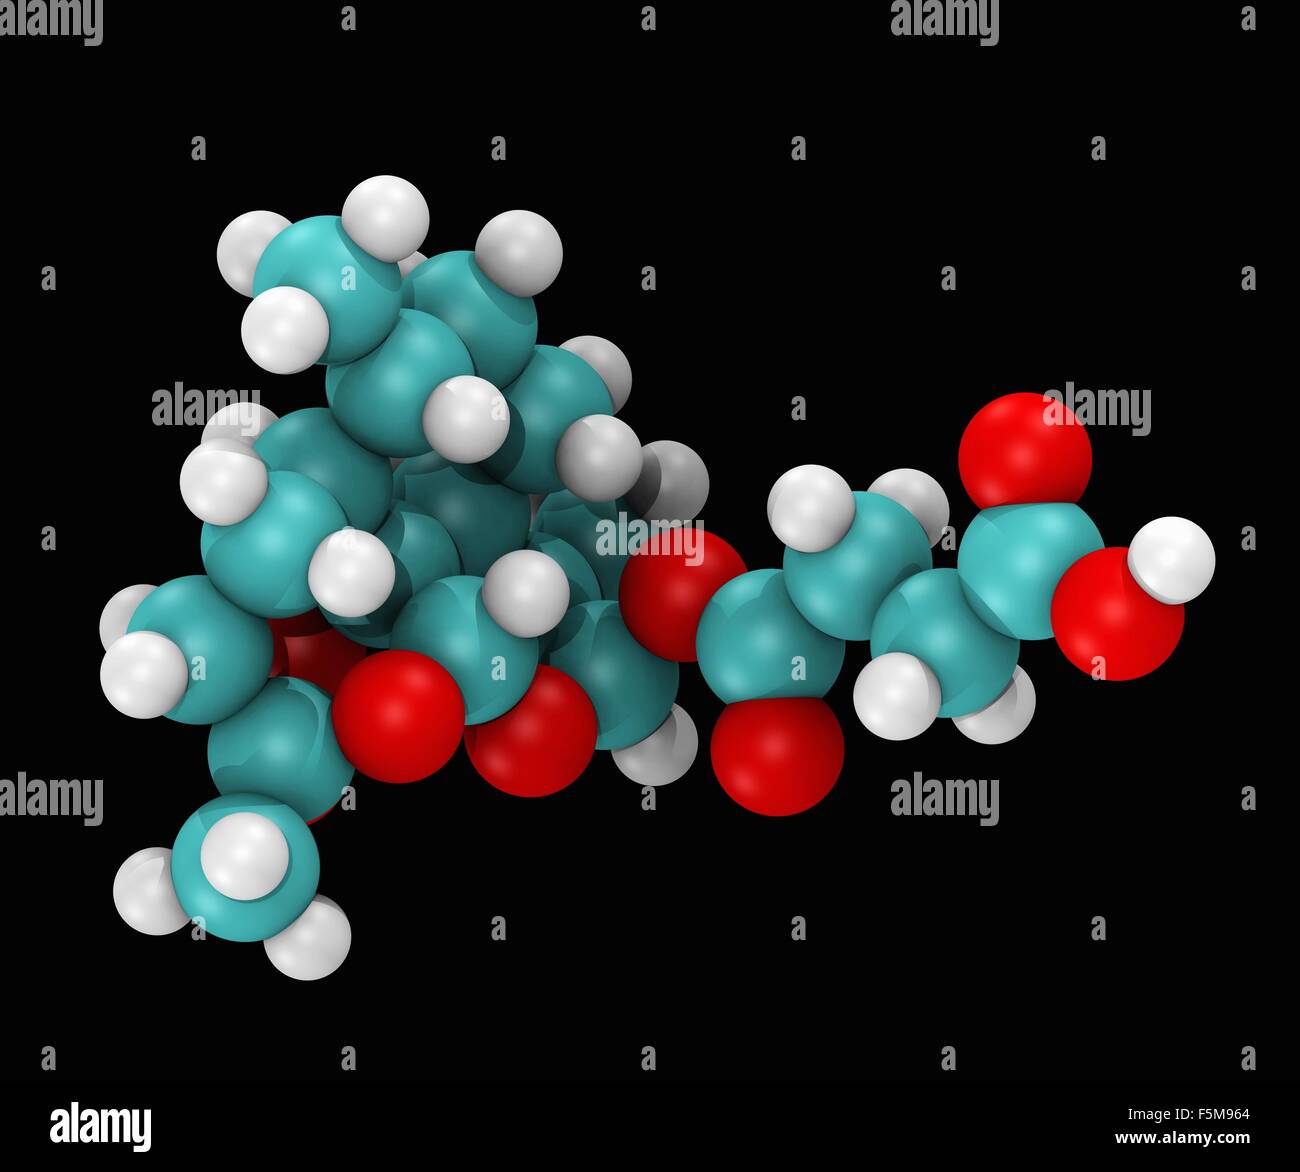 Molekulare Raummodell Füllung von Artesunat, Mitglied der Artemisinin-Gruppe von Medikamenten, die Behandlung von malaria Stockfoto